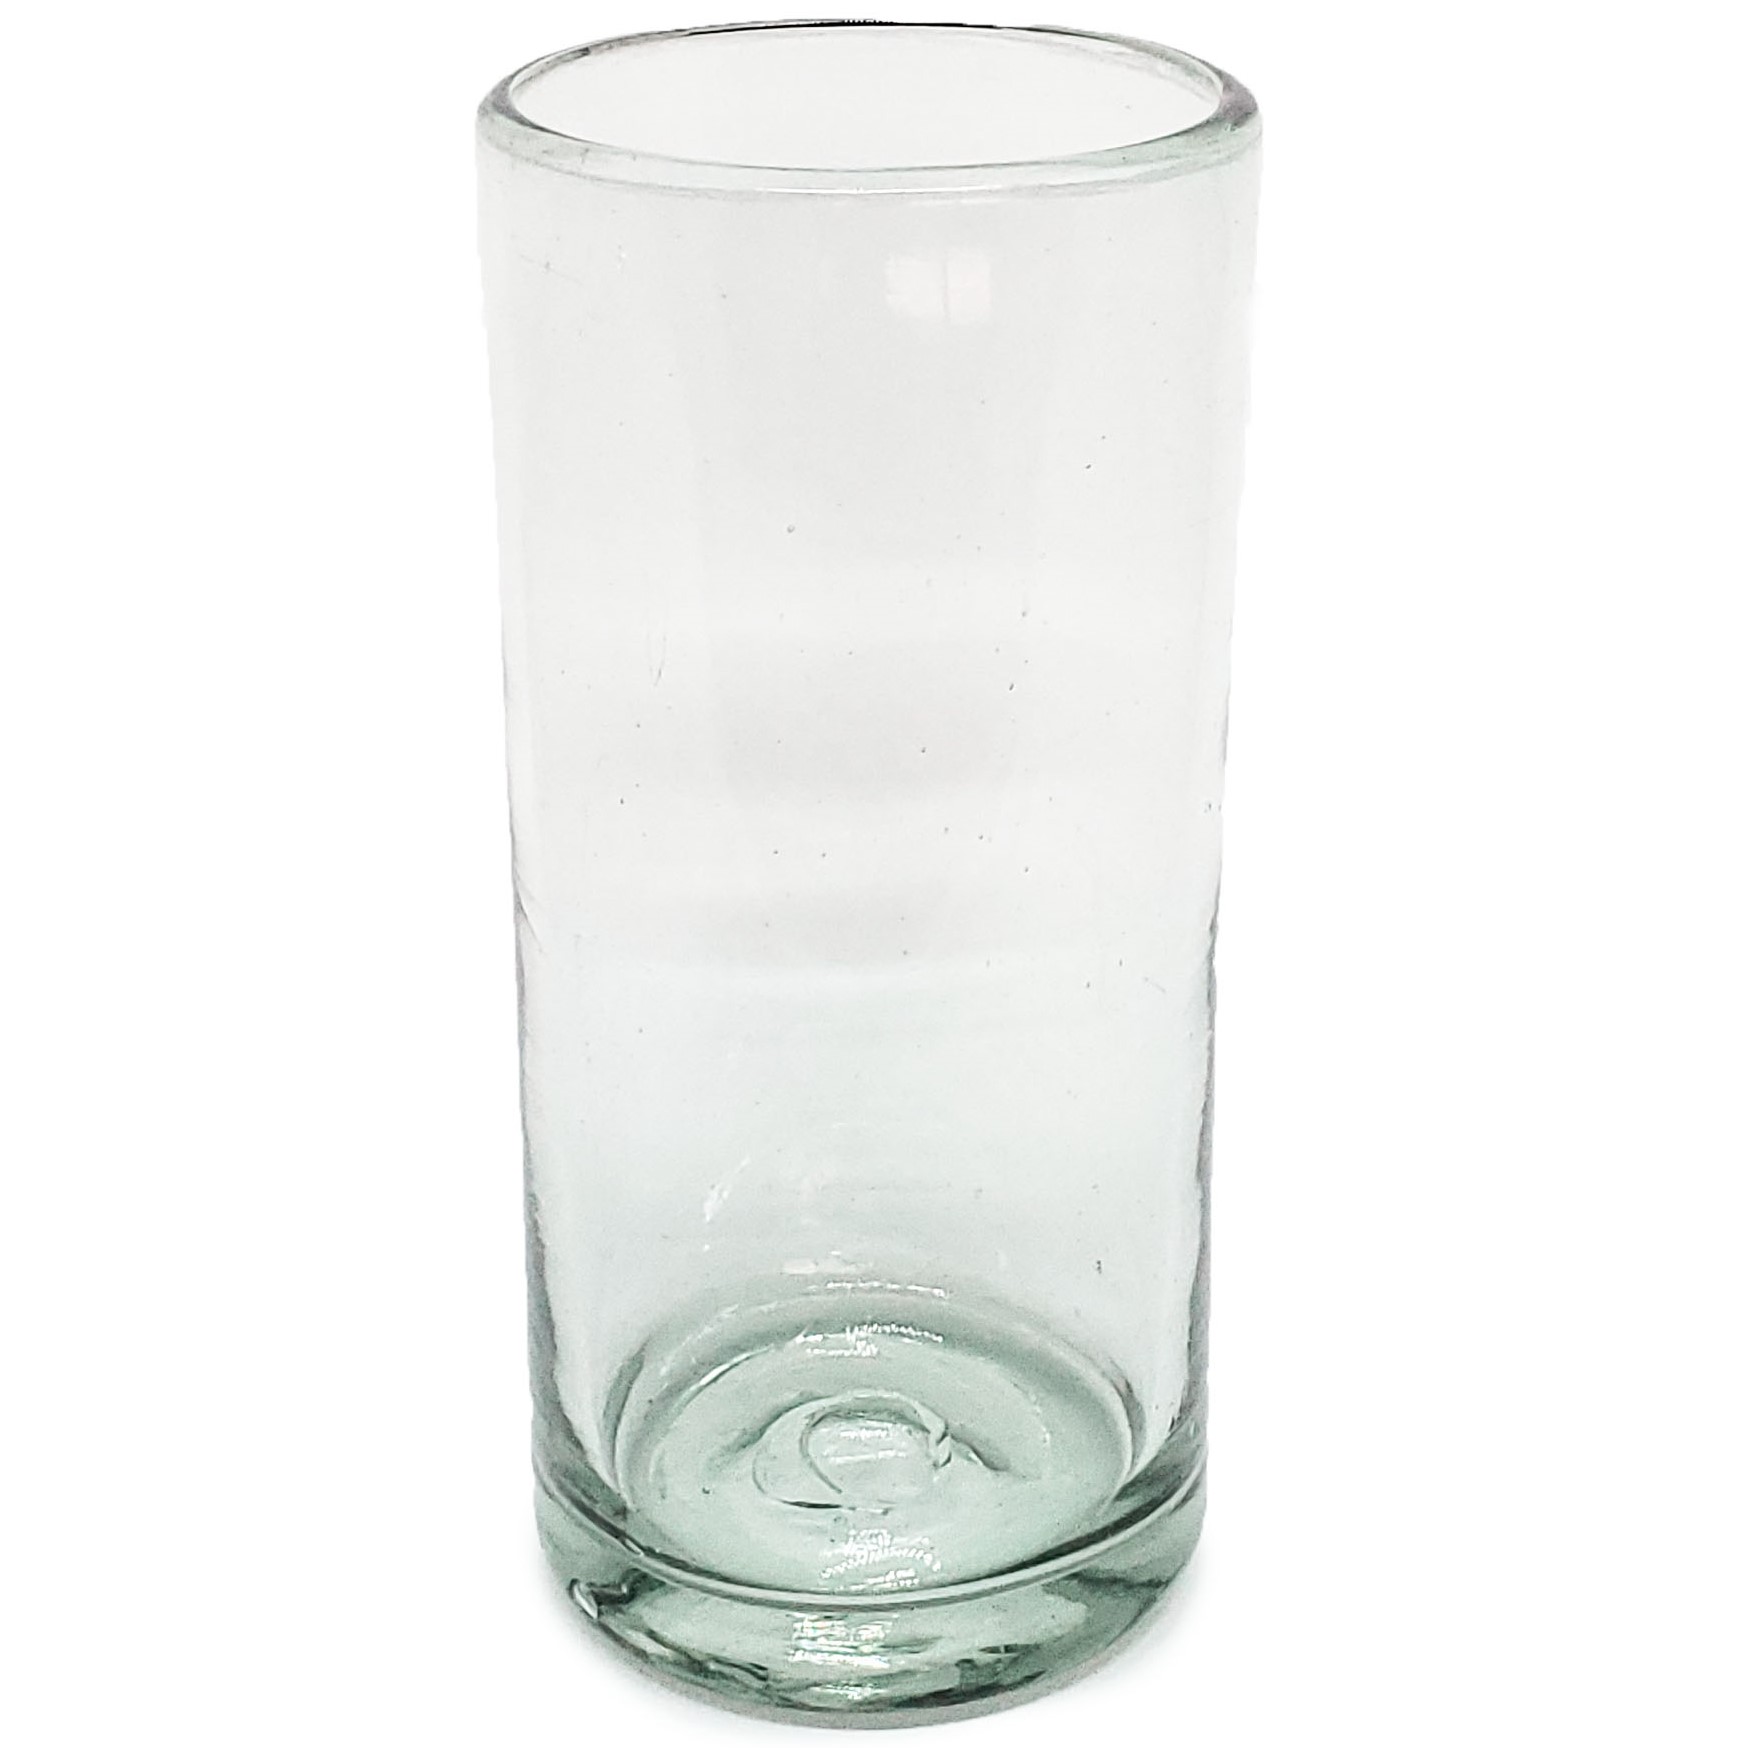 Ofertas / Juego de 6 vasos Jumbo transparentes / Éste clásico juego de vasos jumbo está hecho con vidrio reciclado. Contiene pequeñas burbujas atrapadas en el vaso.